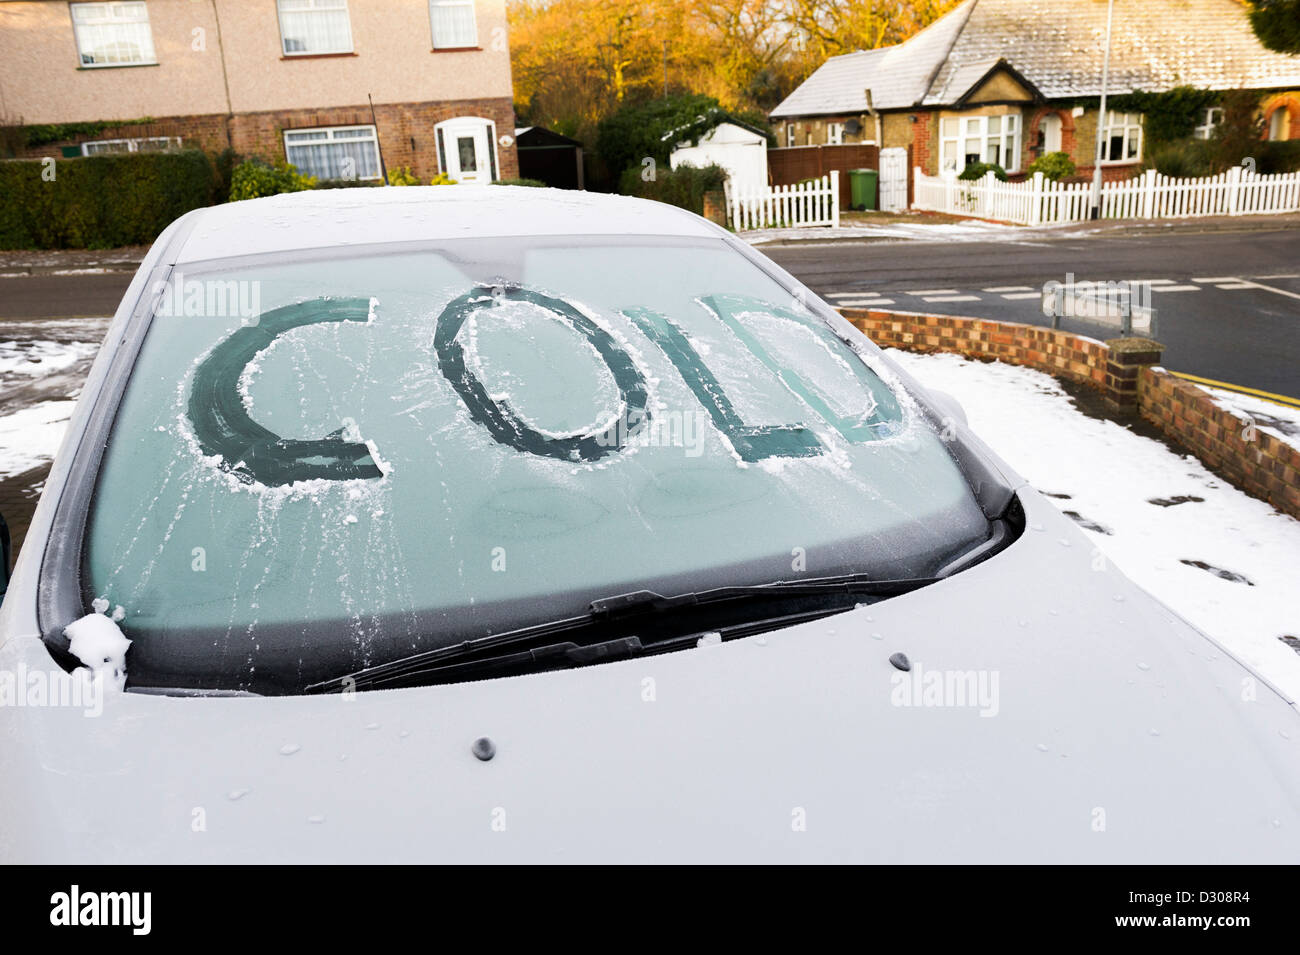 Wort, das "Kalte" in einem Eis abgeschabt bedeckt Windschutzscheibe eines Autos am Morgen, UK Stockfoto